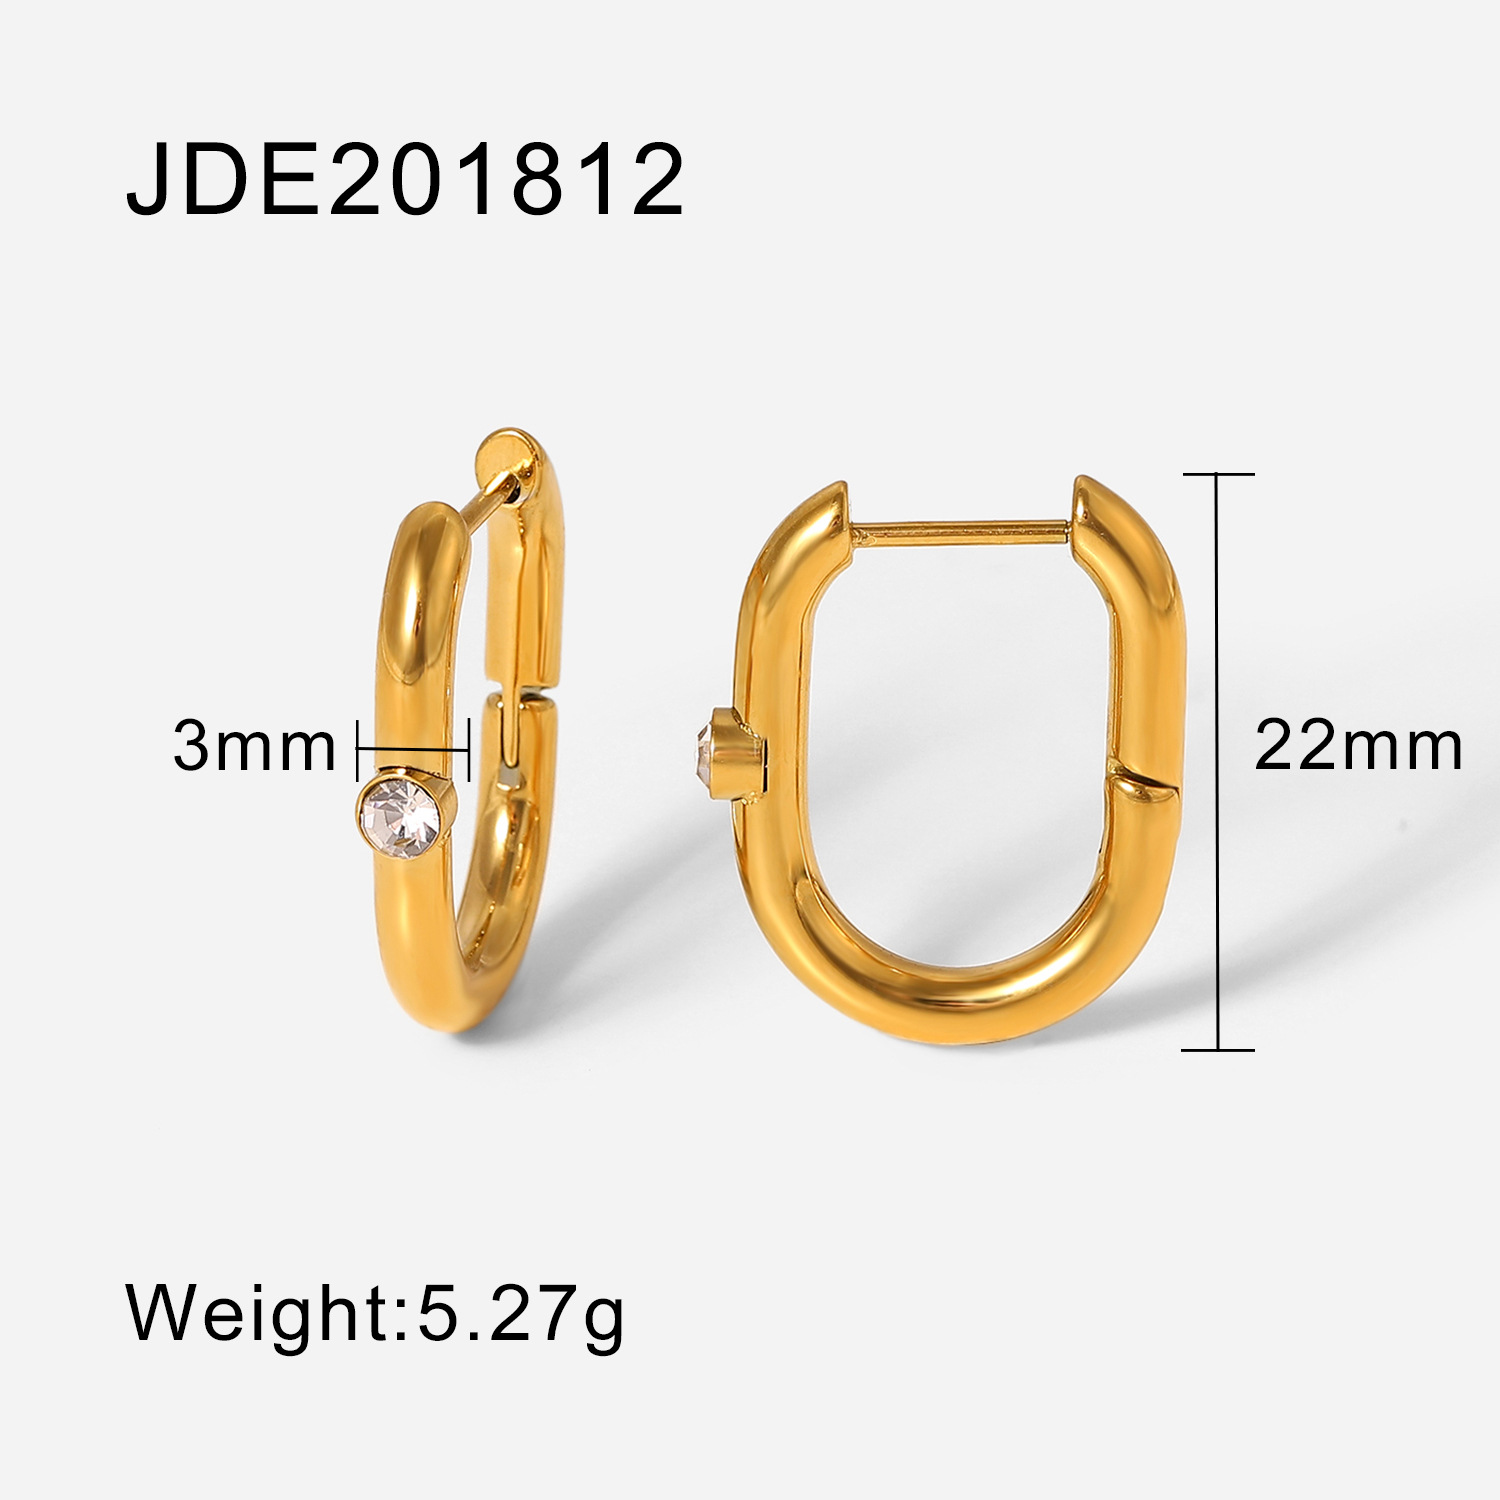 JDE201812 size